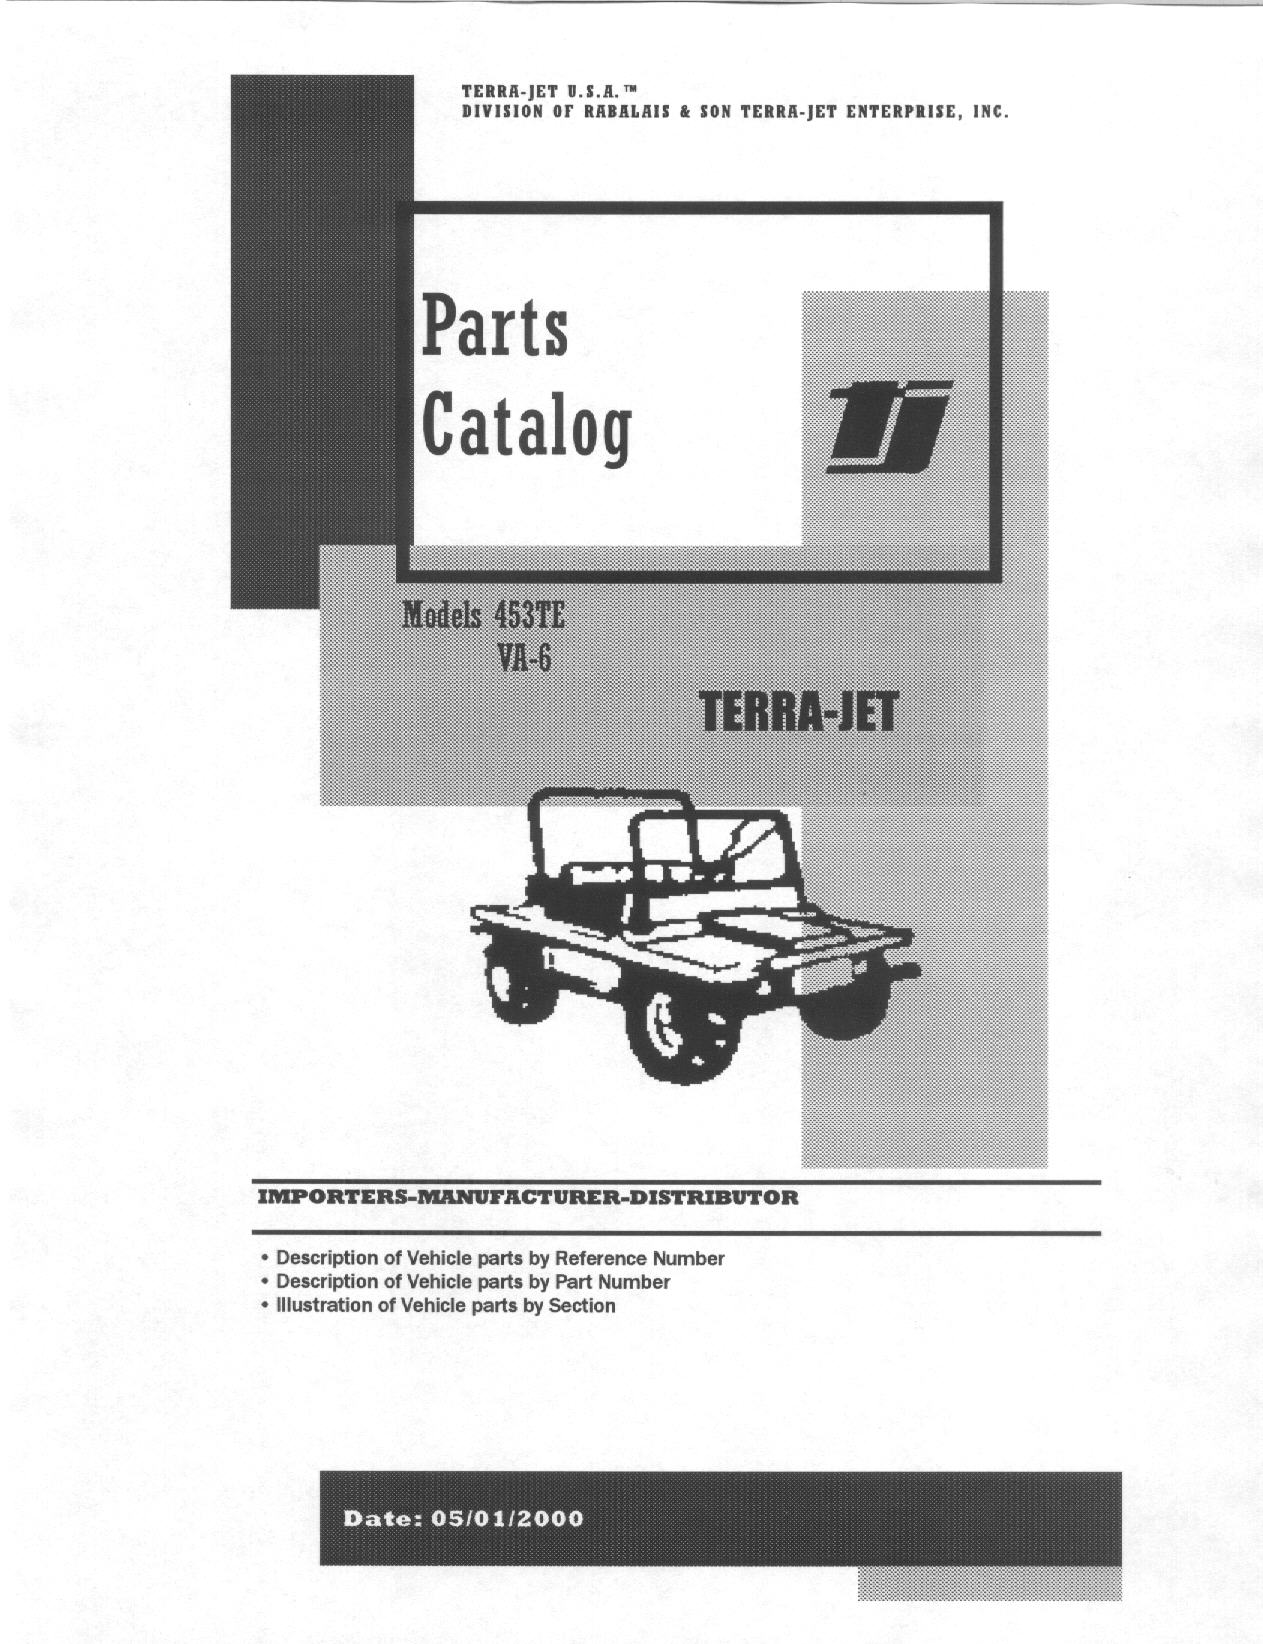 Terra-Jet Parts Catalogs